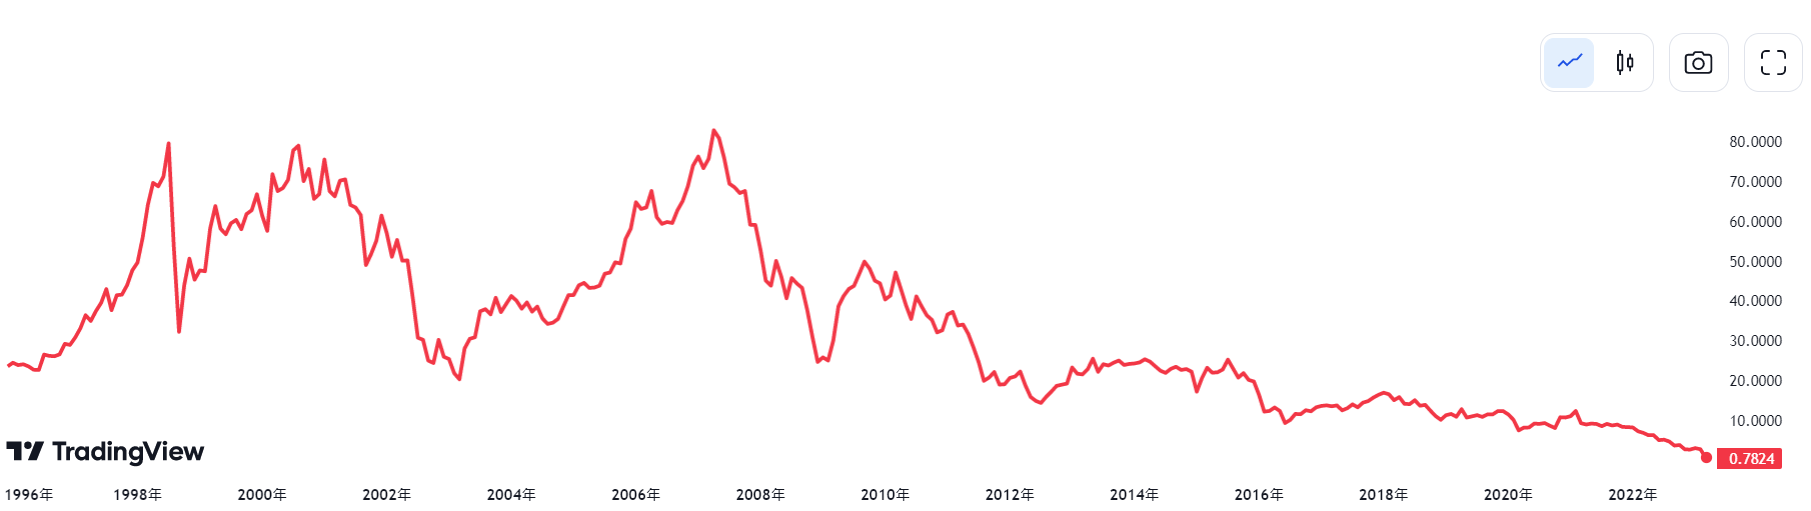 瑞士信貸股價